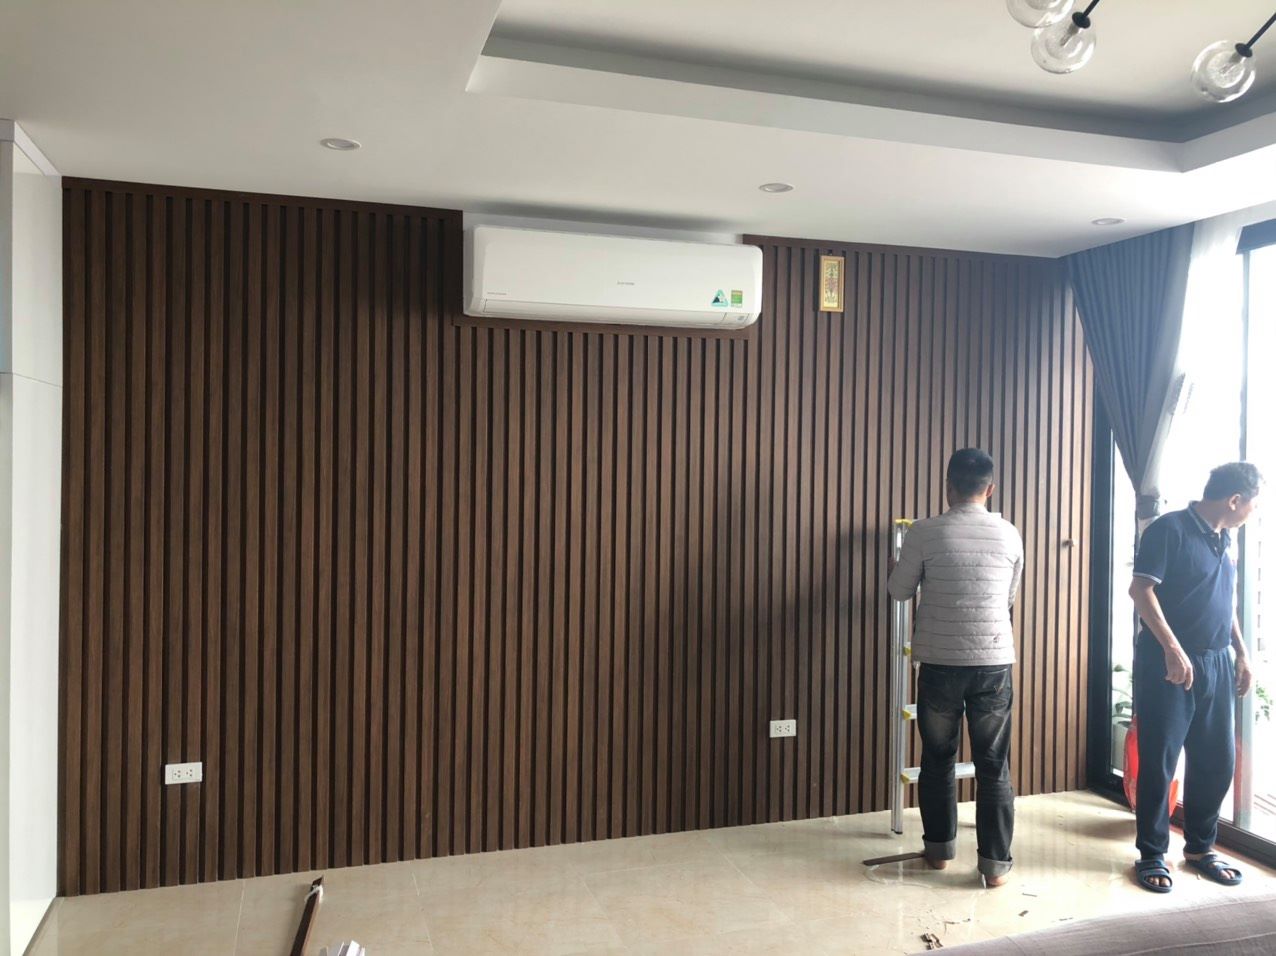 Báo giá tấm ốp tường gỗ nhựa composite giả gỗ phẳng, Sóng, Theo m2 tại hà nội 2022 hoàn thiện trọn gói